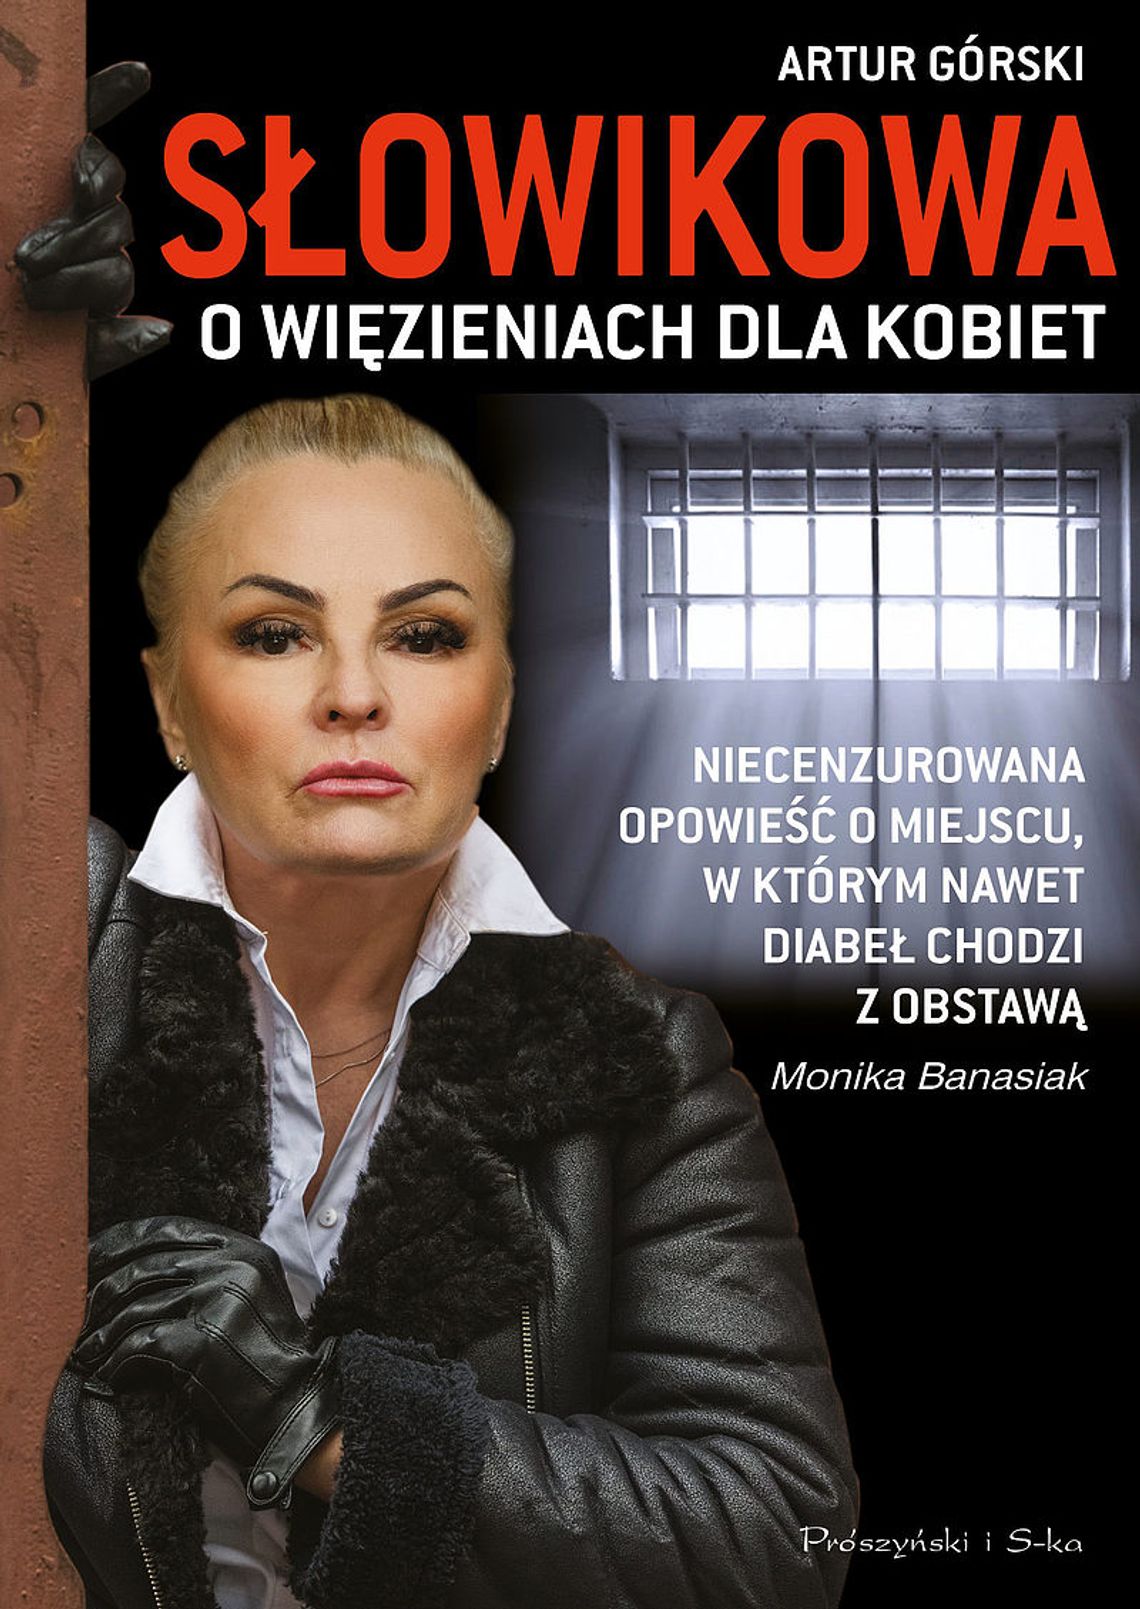 Monika Banasiak, Artur Górski "Słowikowa o więzieniach dla kobiet"; wyd. Prószyński i S-ka